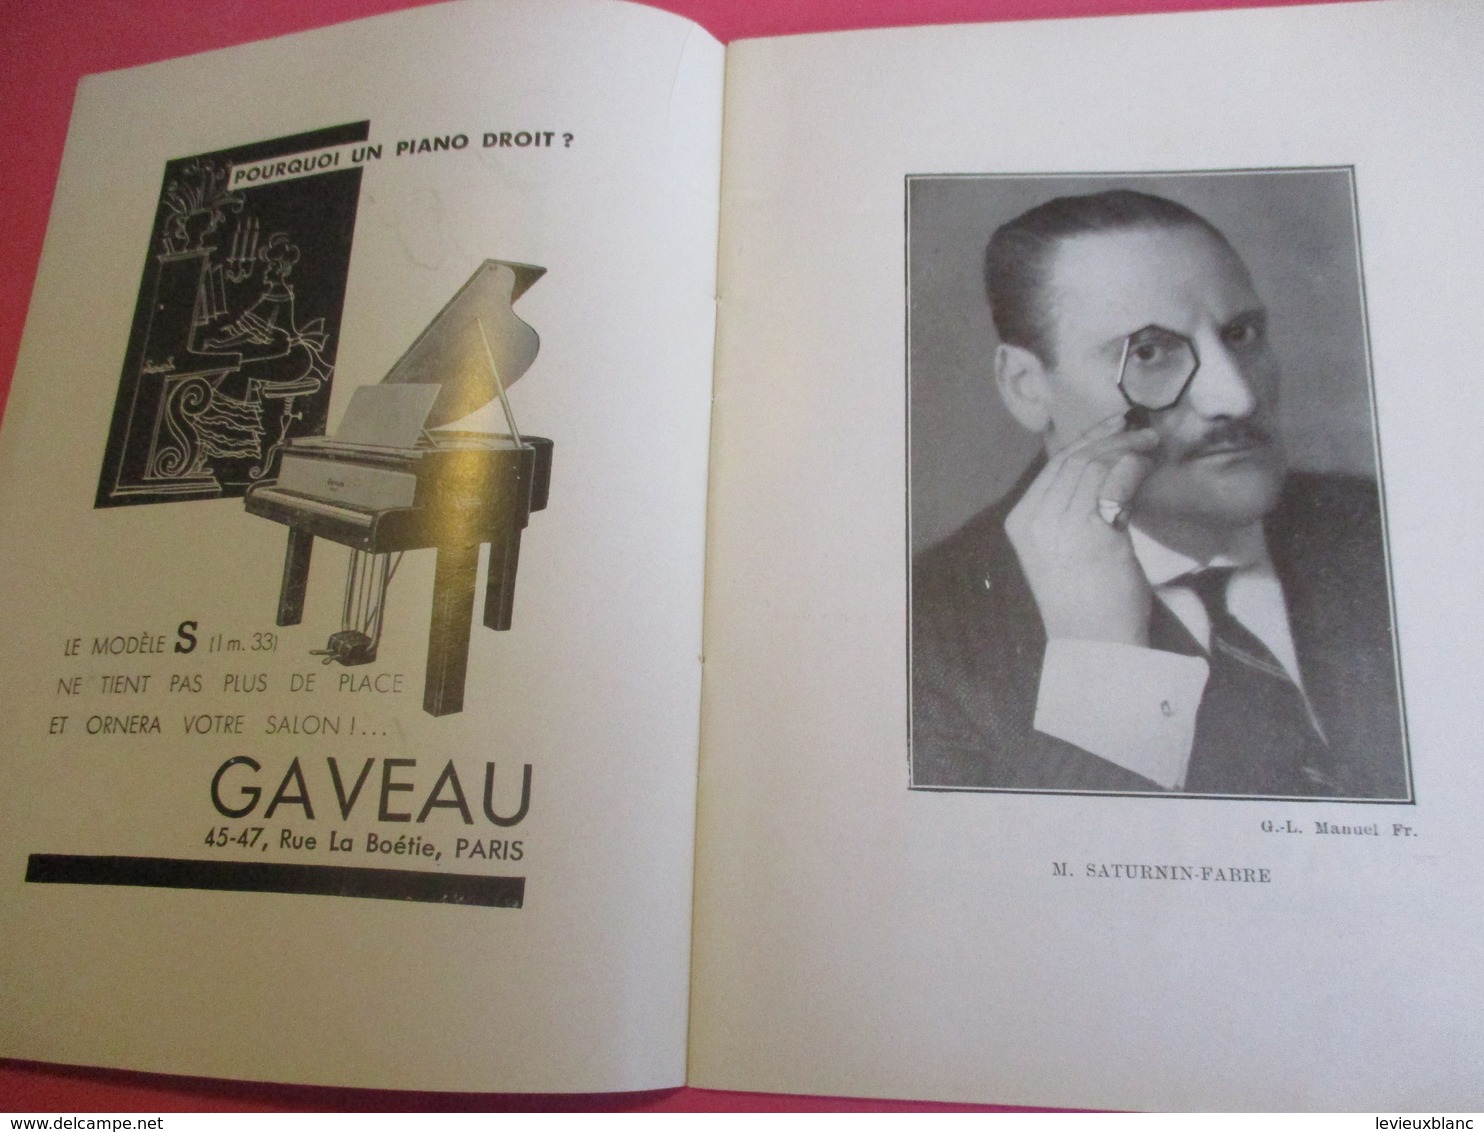 Programme Théâtre/MARIGNY/Léon VOLTERRA/L'Ecole Des Contribuables/Verneuil-Berr/André LUGUET/SATURNIN-FABRE/1934 PROG221 - Programma's